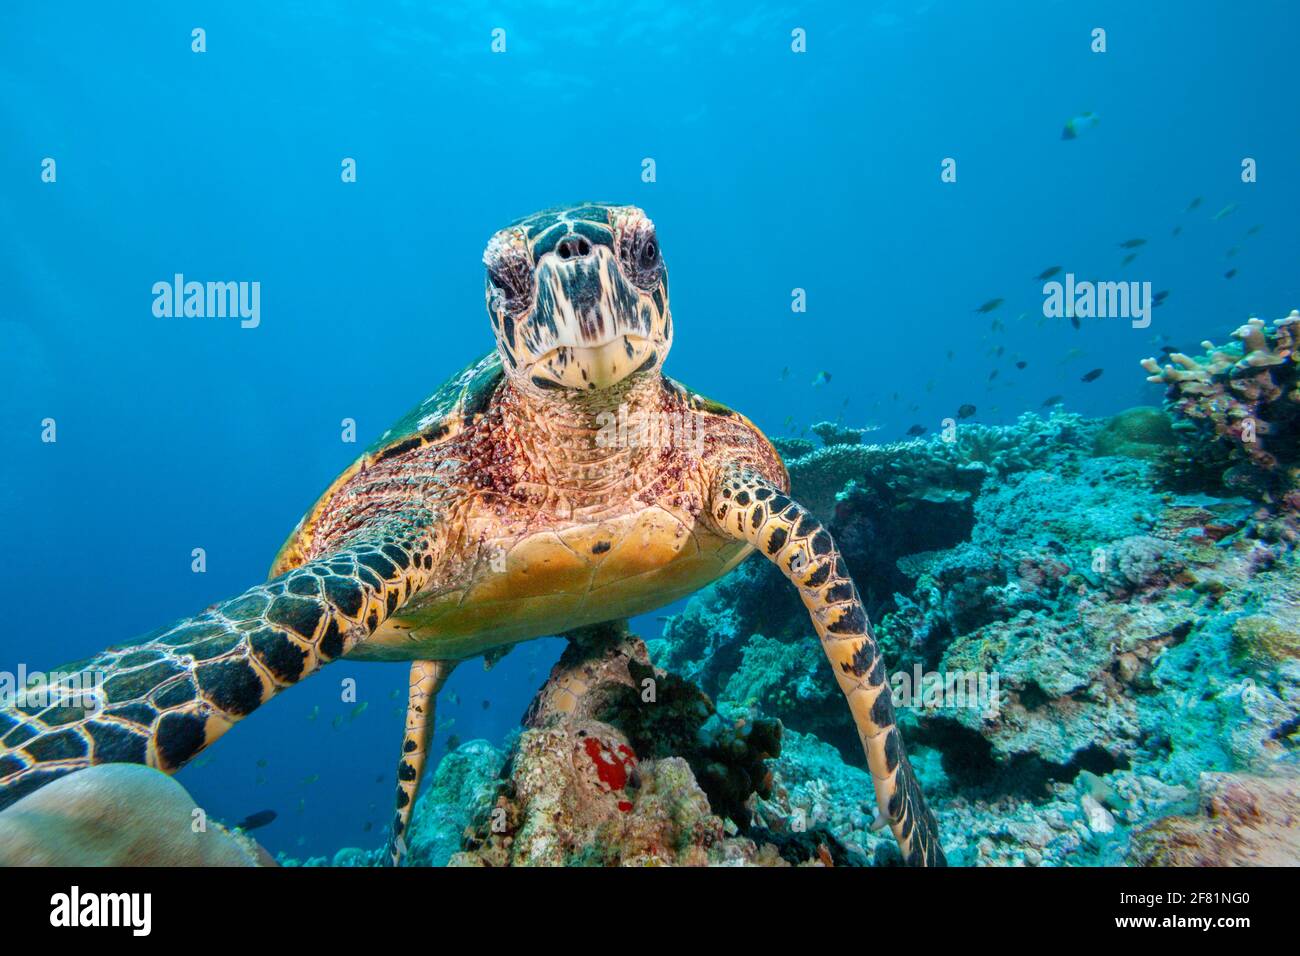 Una tartaruga di falksbill, Eretmochelys imbricata, guardando direttamente nella macchina fotografica, Isola di Sipidan, Malesia. Foto Stock